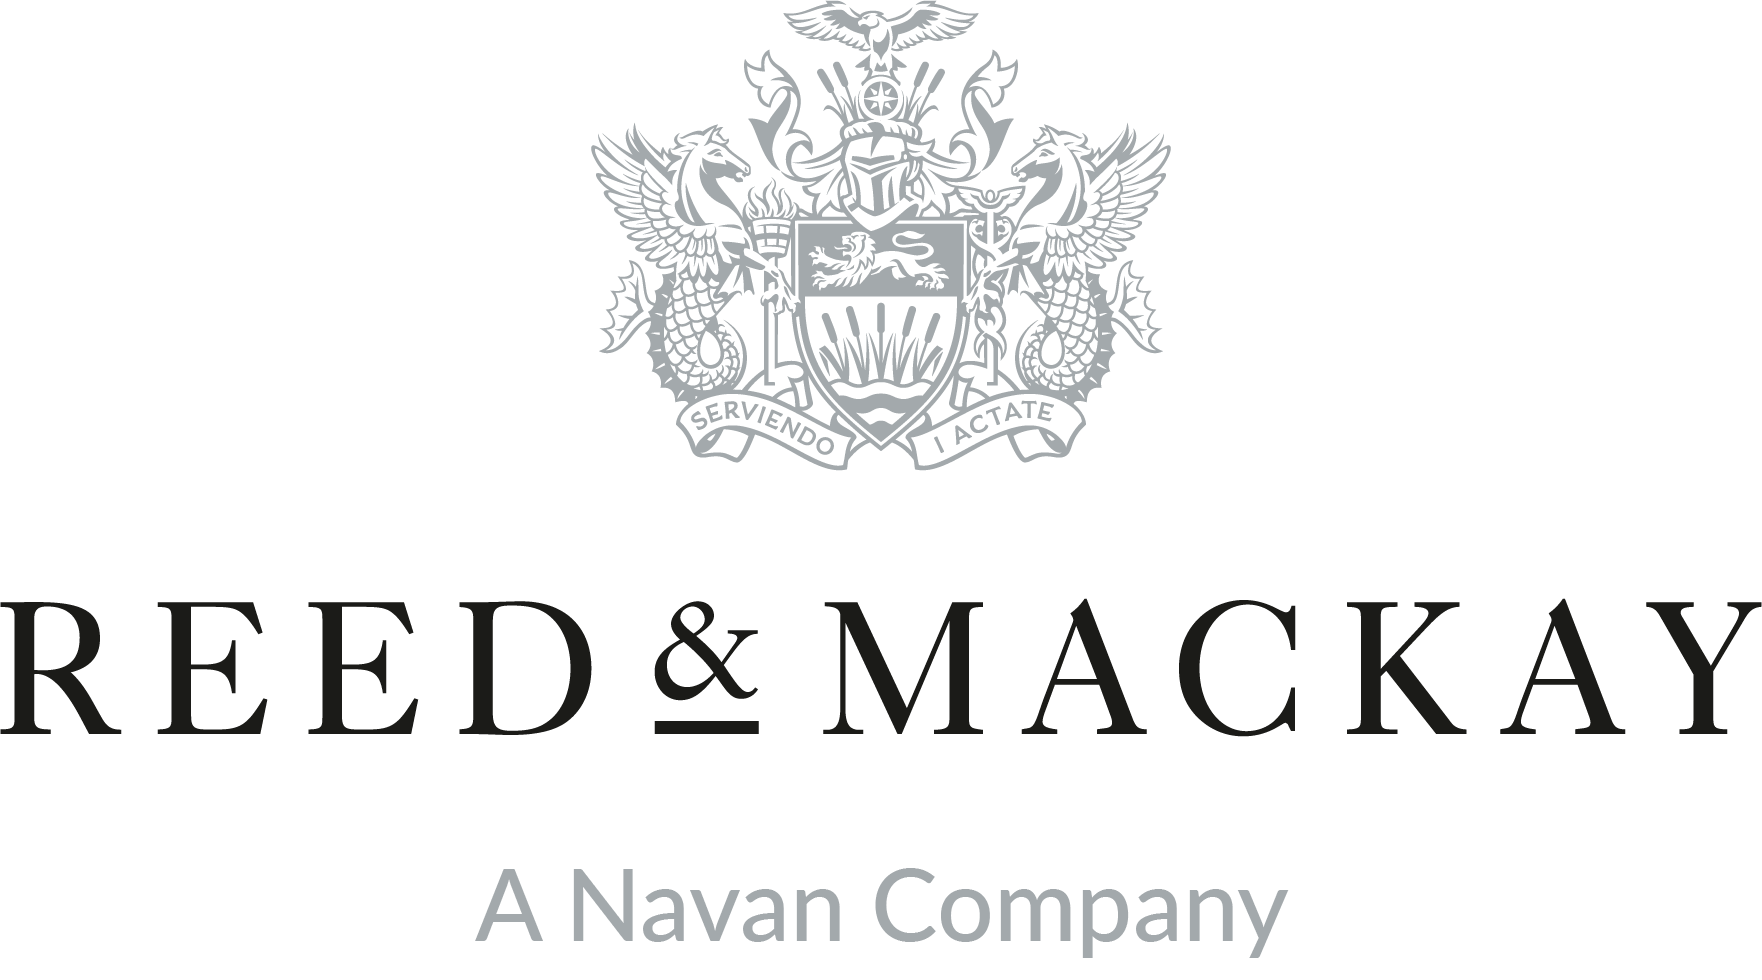 Reed & Mackay logo